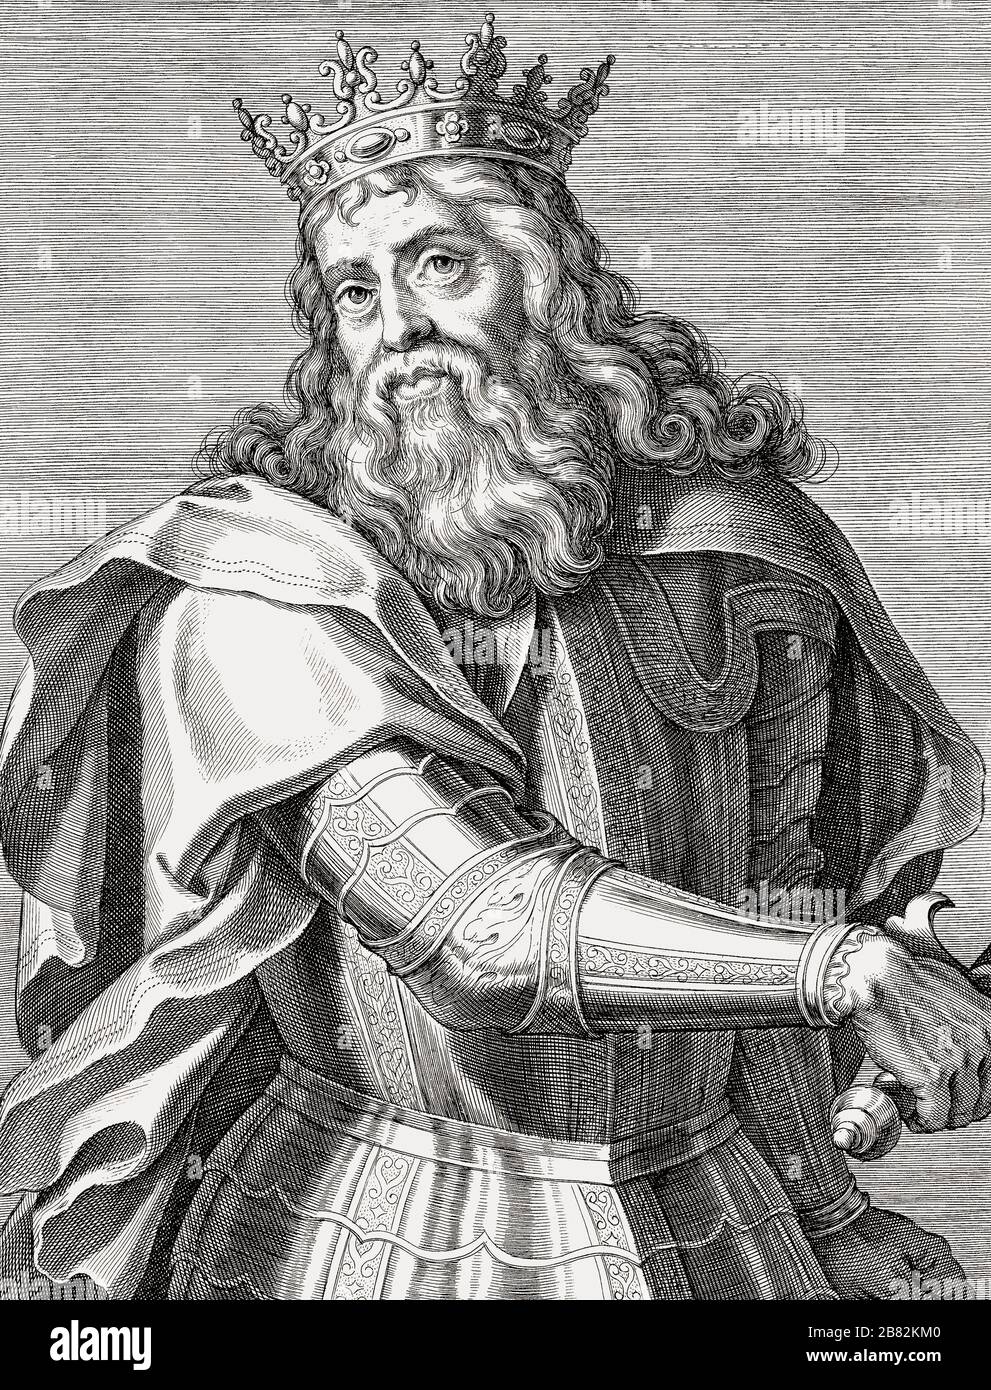 Roi Pedro I du Portugal, 1320 - 1367. Surnommé le Just, et le cruel. Roi Pierre I du Portugal. Après une gravure du XVIIe siècle. Banque D'Images